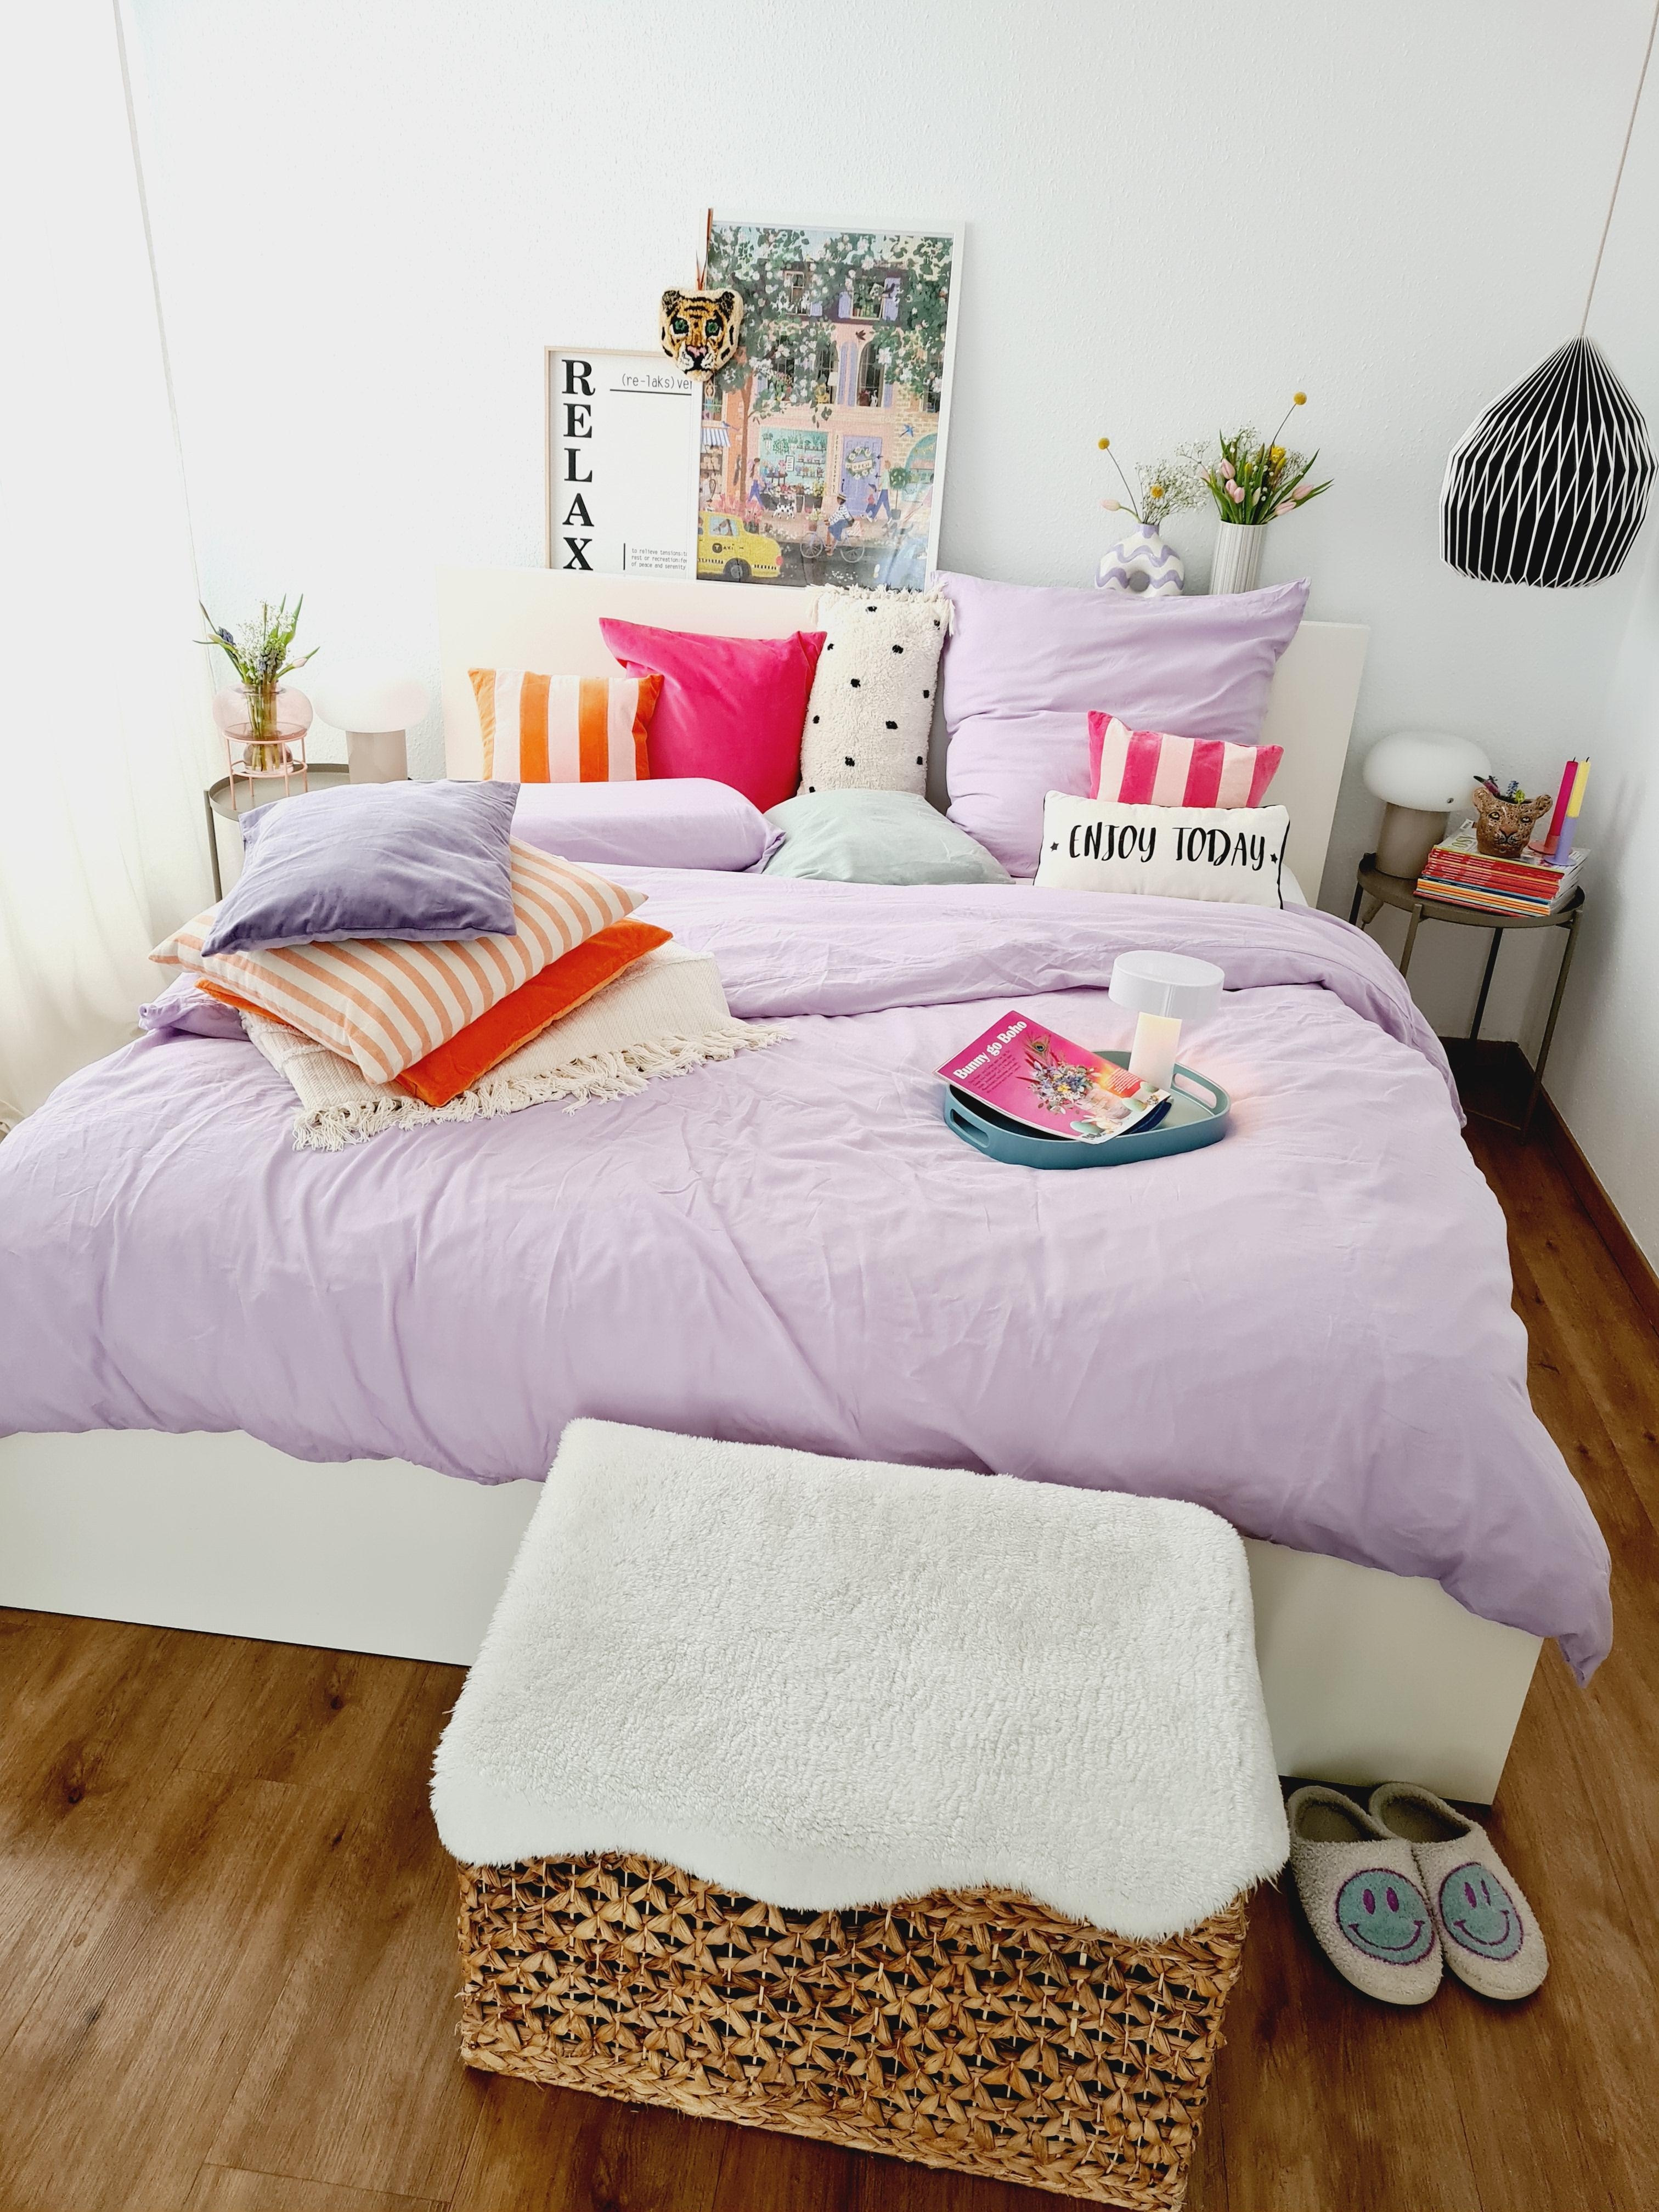 Neue Farben im Schlafzimmer #Bettwäsche #schöneszuhause #solebenwir 